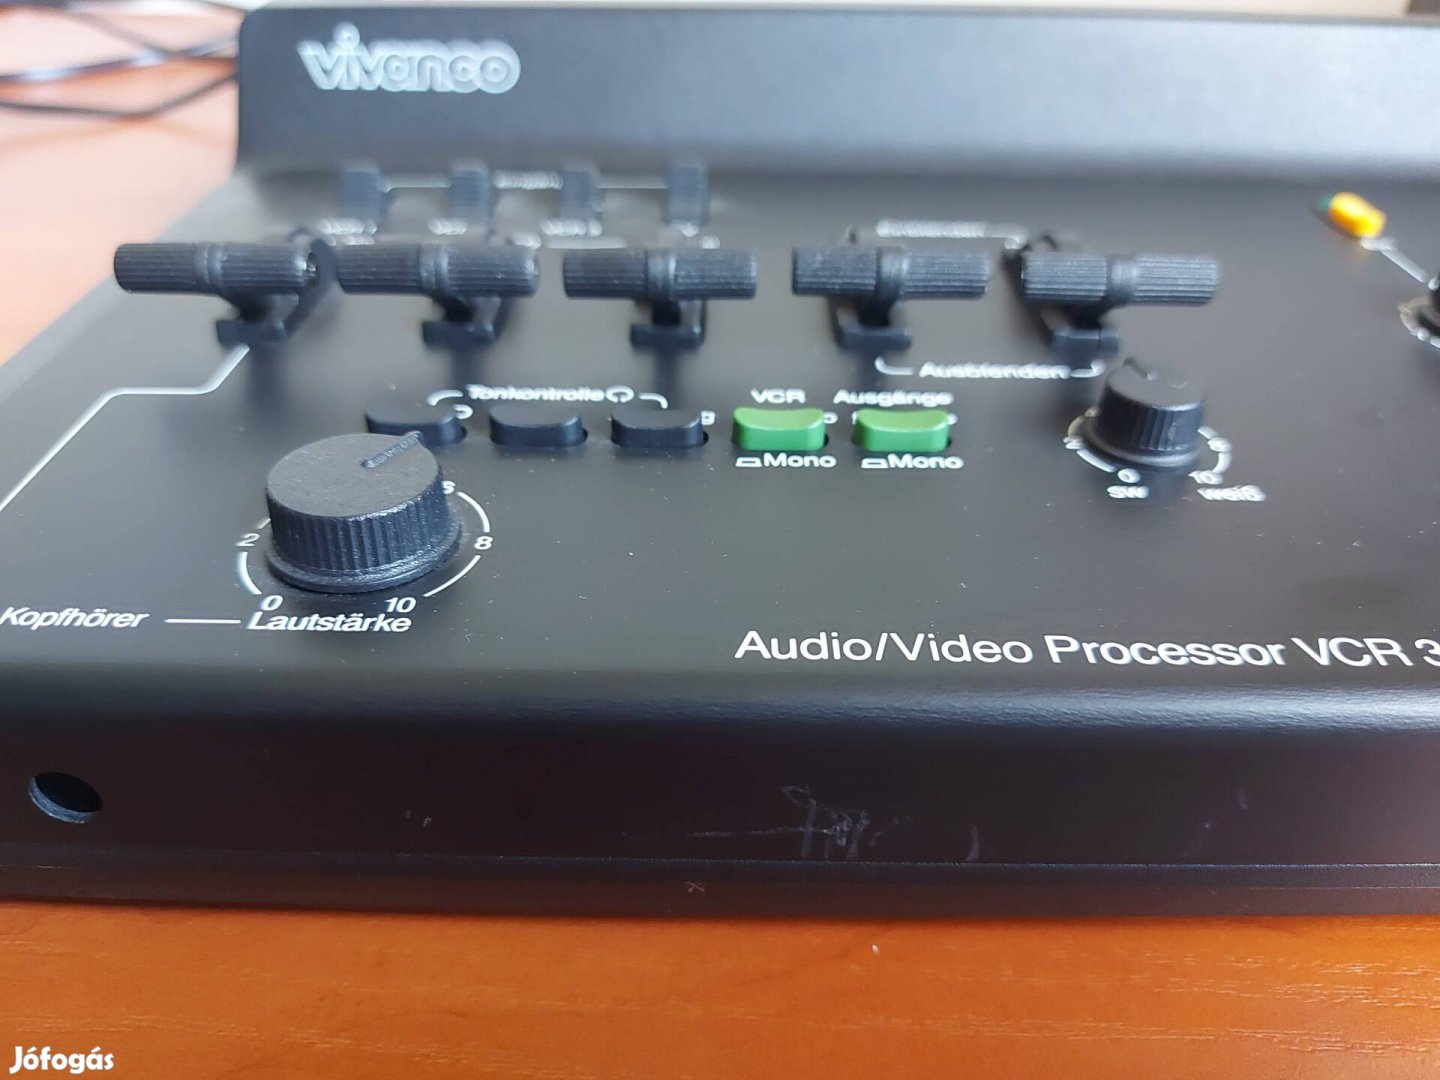 Vivanco Audio/Video Processor VCR 3044